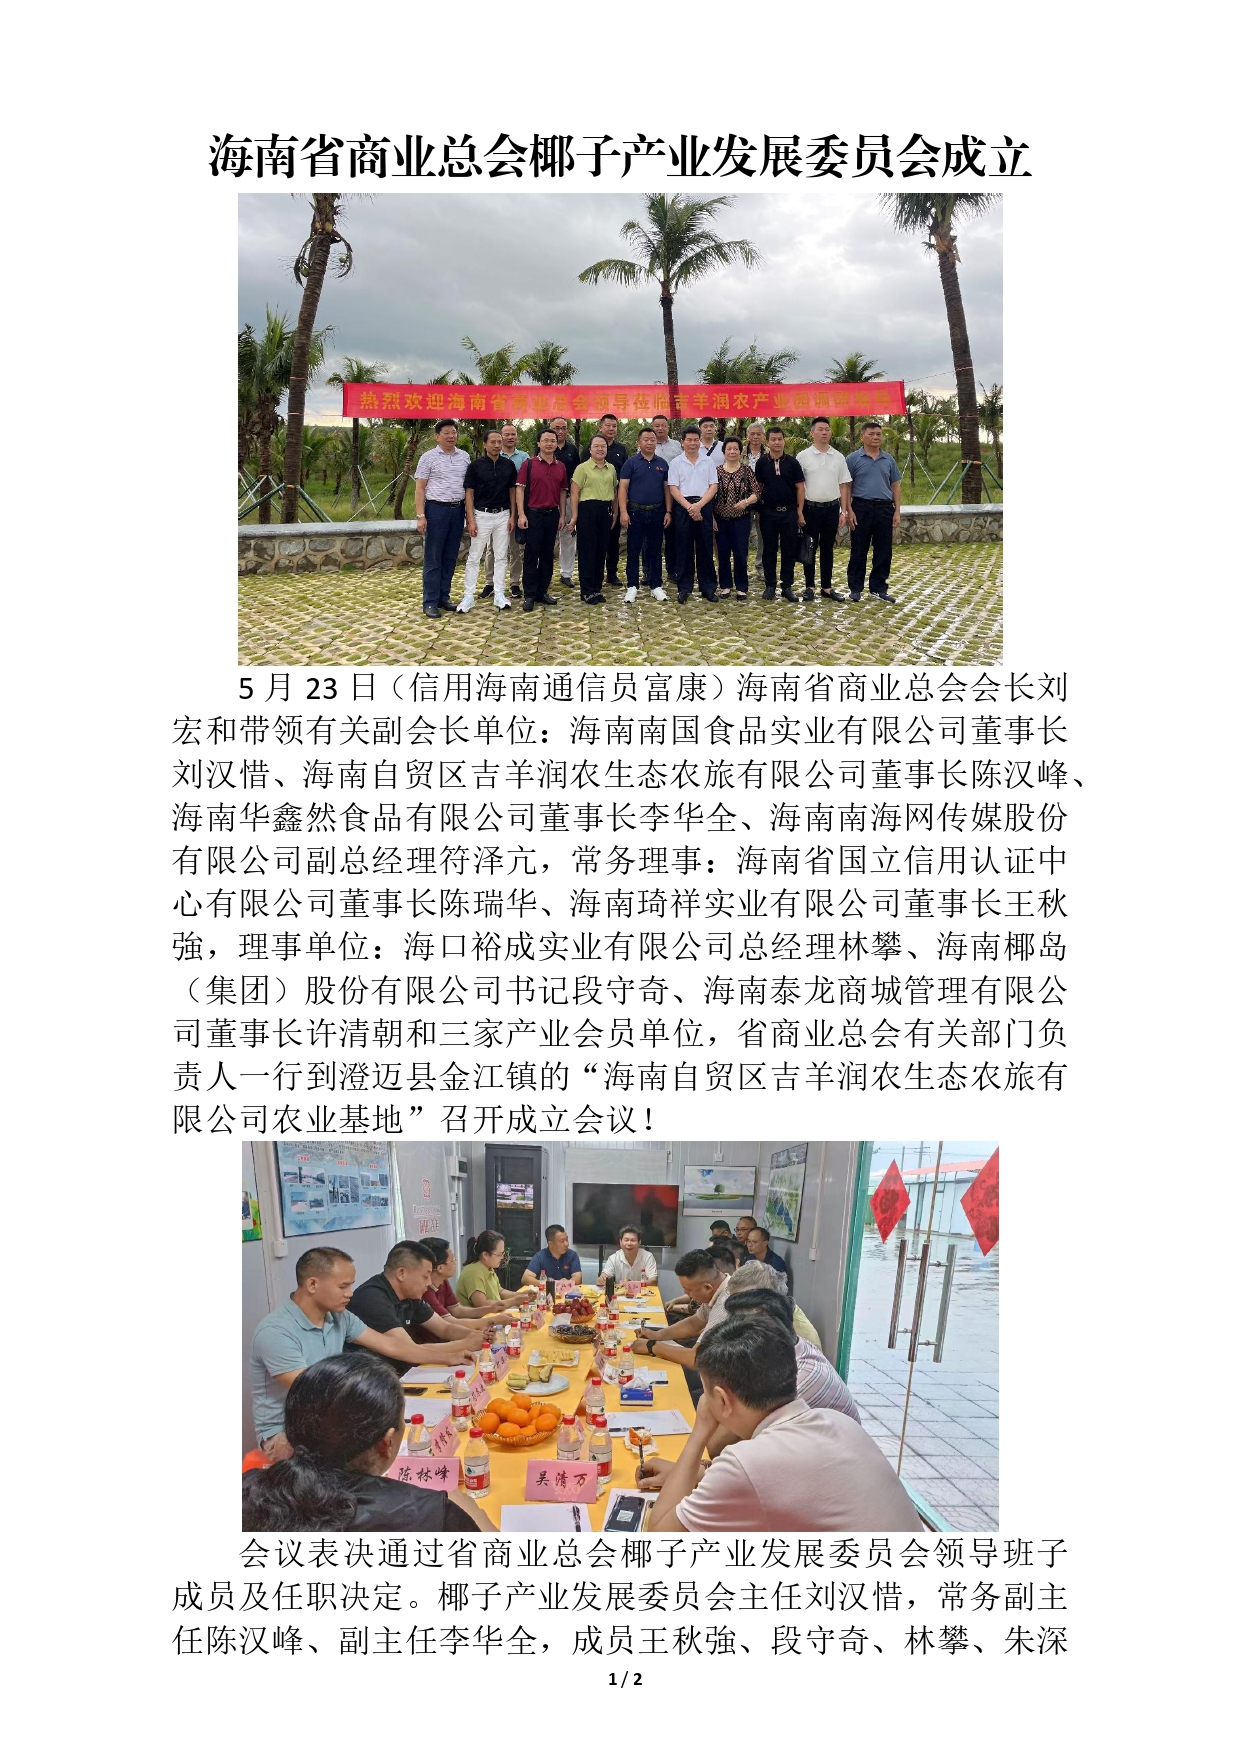 海南省商业总会椰子产业发展委员会成立(1)_page-0001.jpg